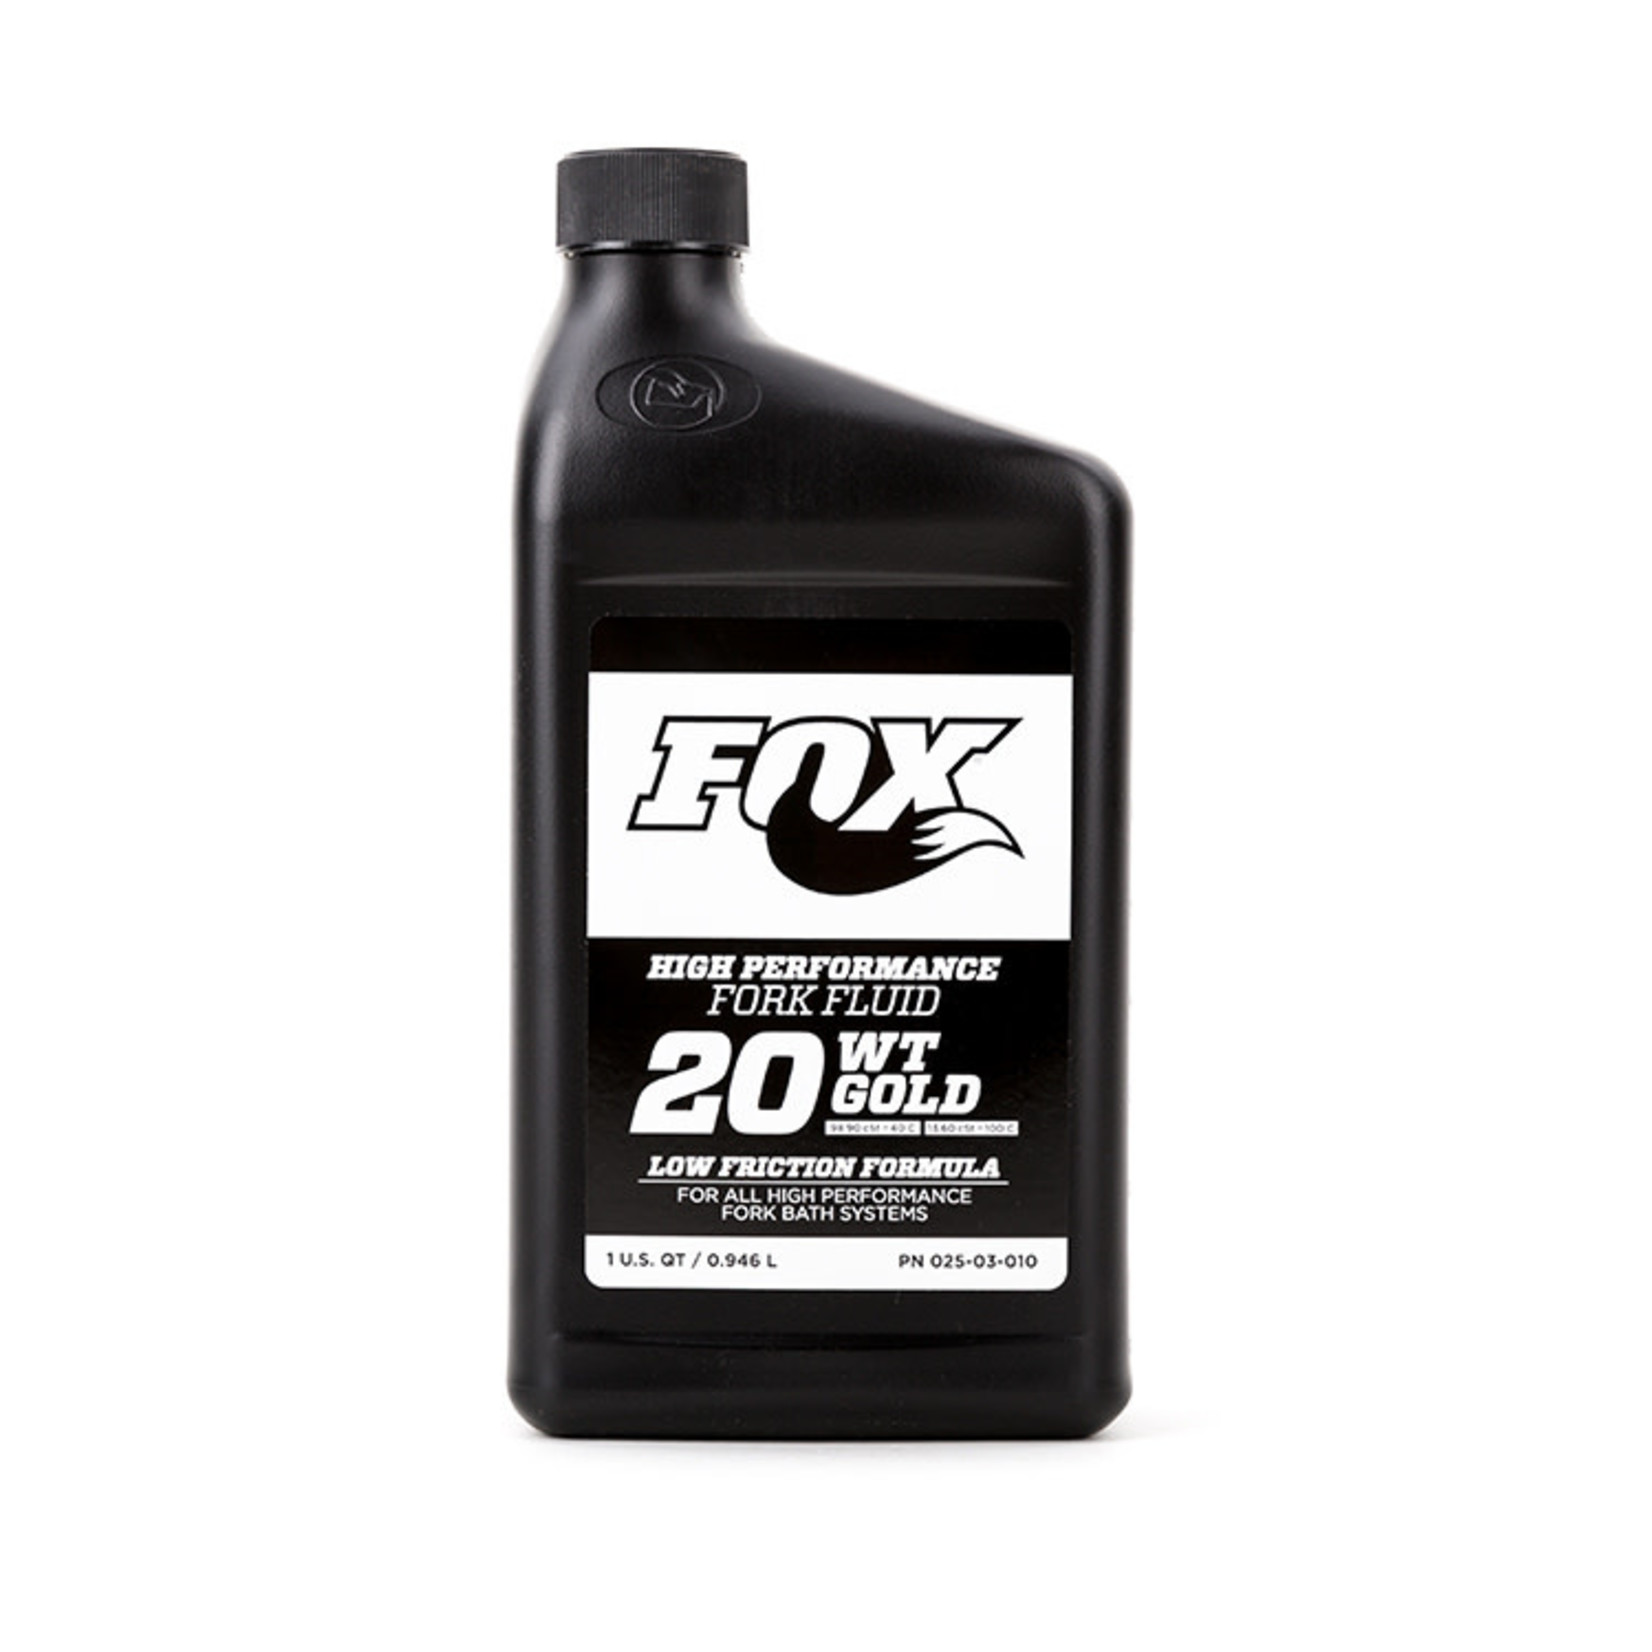 Fox Shox FOX Suspension Bath Oil, 20wt Gold, 32oz